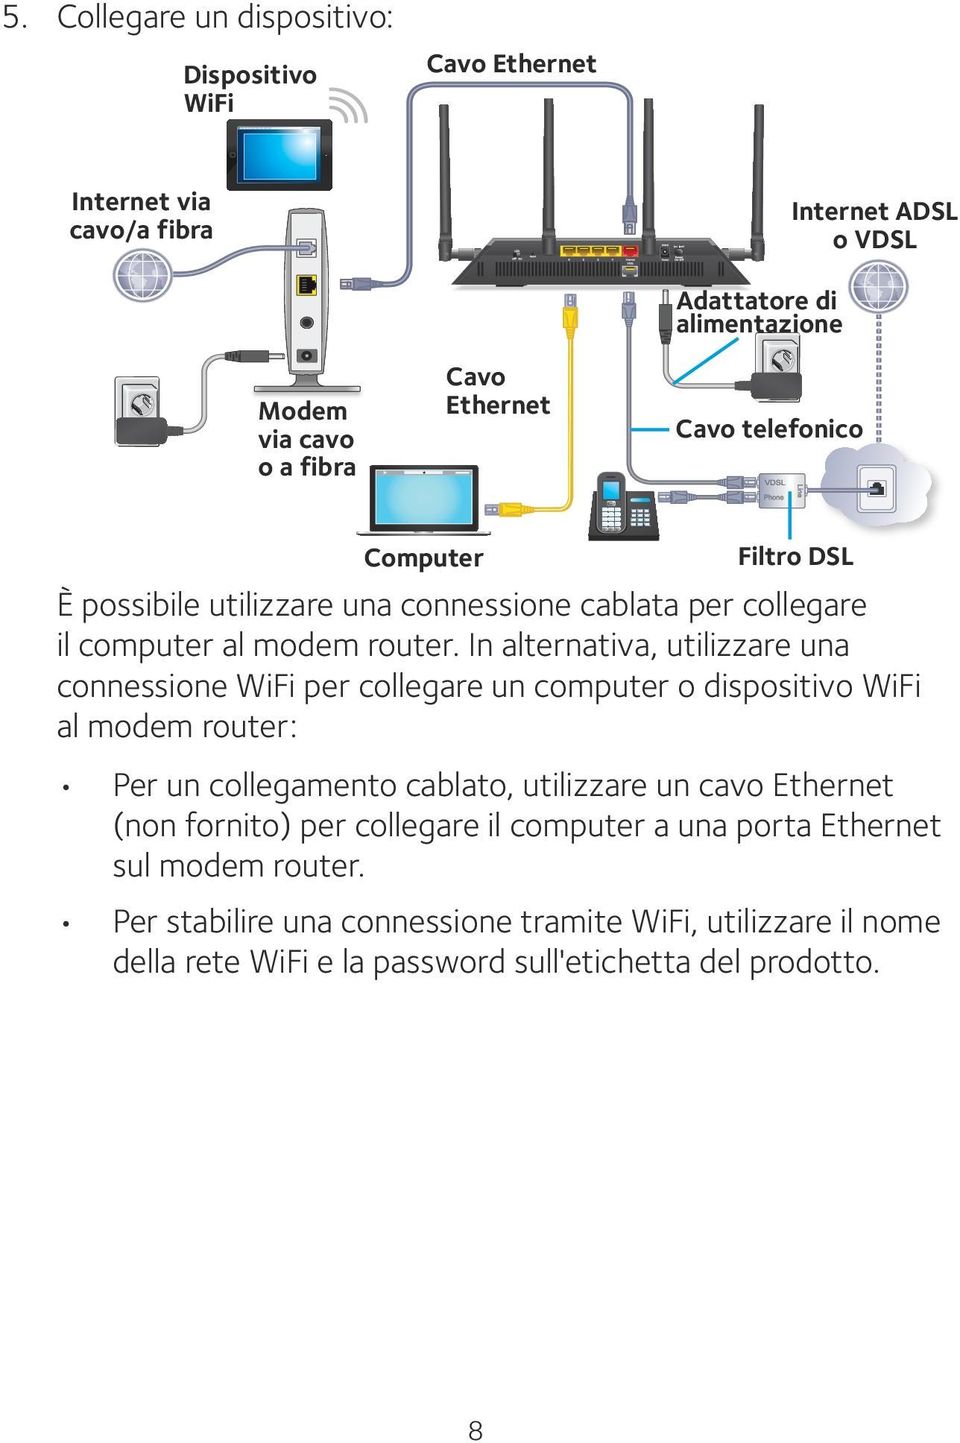 In alternativa, utilizzare una connessione WiFi per collegare un computer o dispositivo WiFi al modem router: Per un collegamento cablato, utilizzare un cavo Ethernet